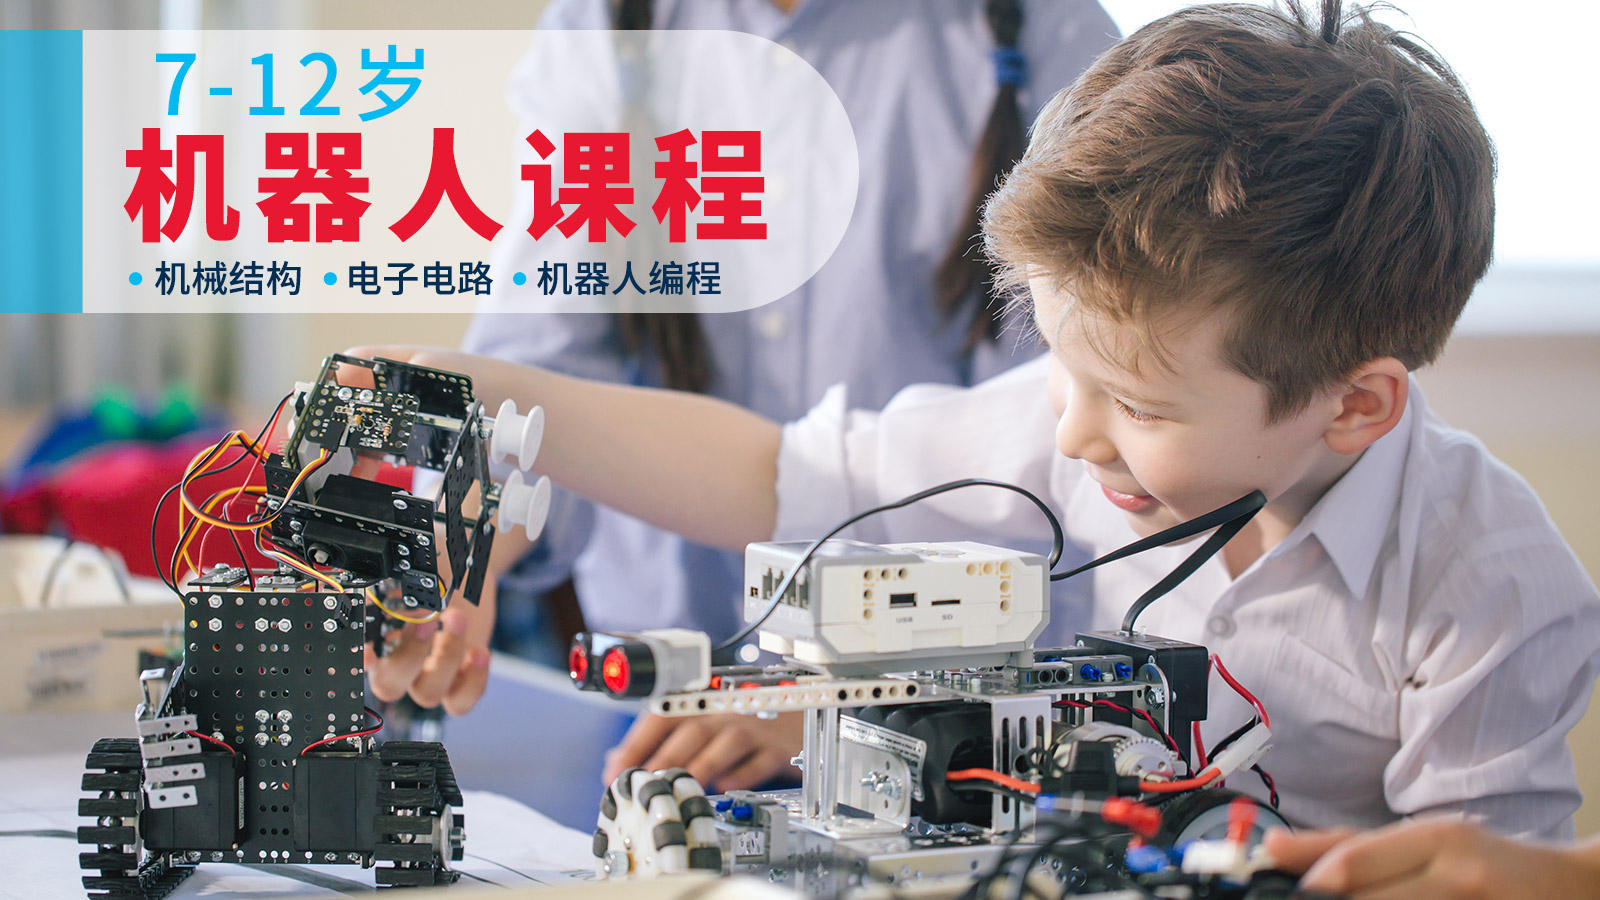 上海森孚机器人教育7-12岁儿童机器人课程图片